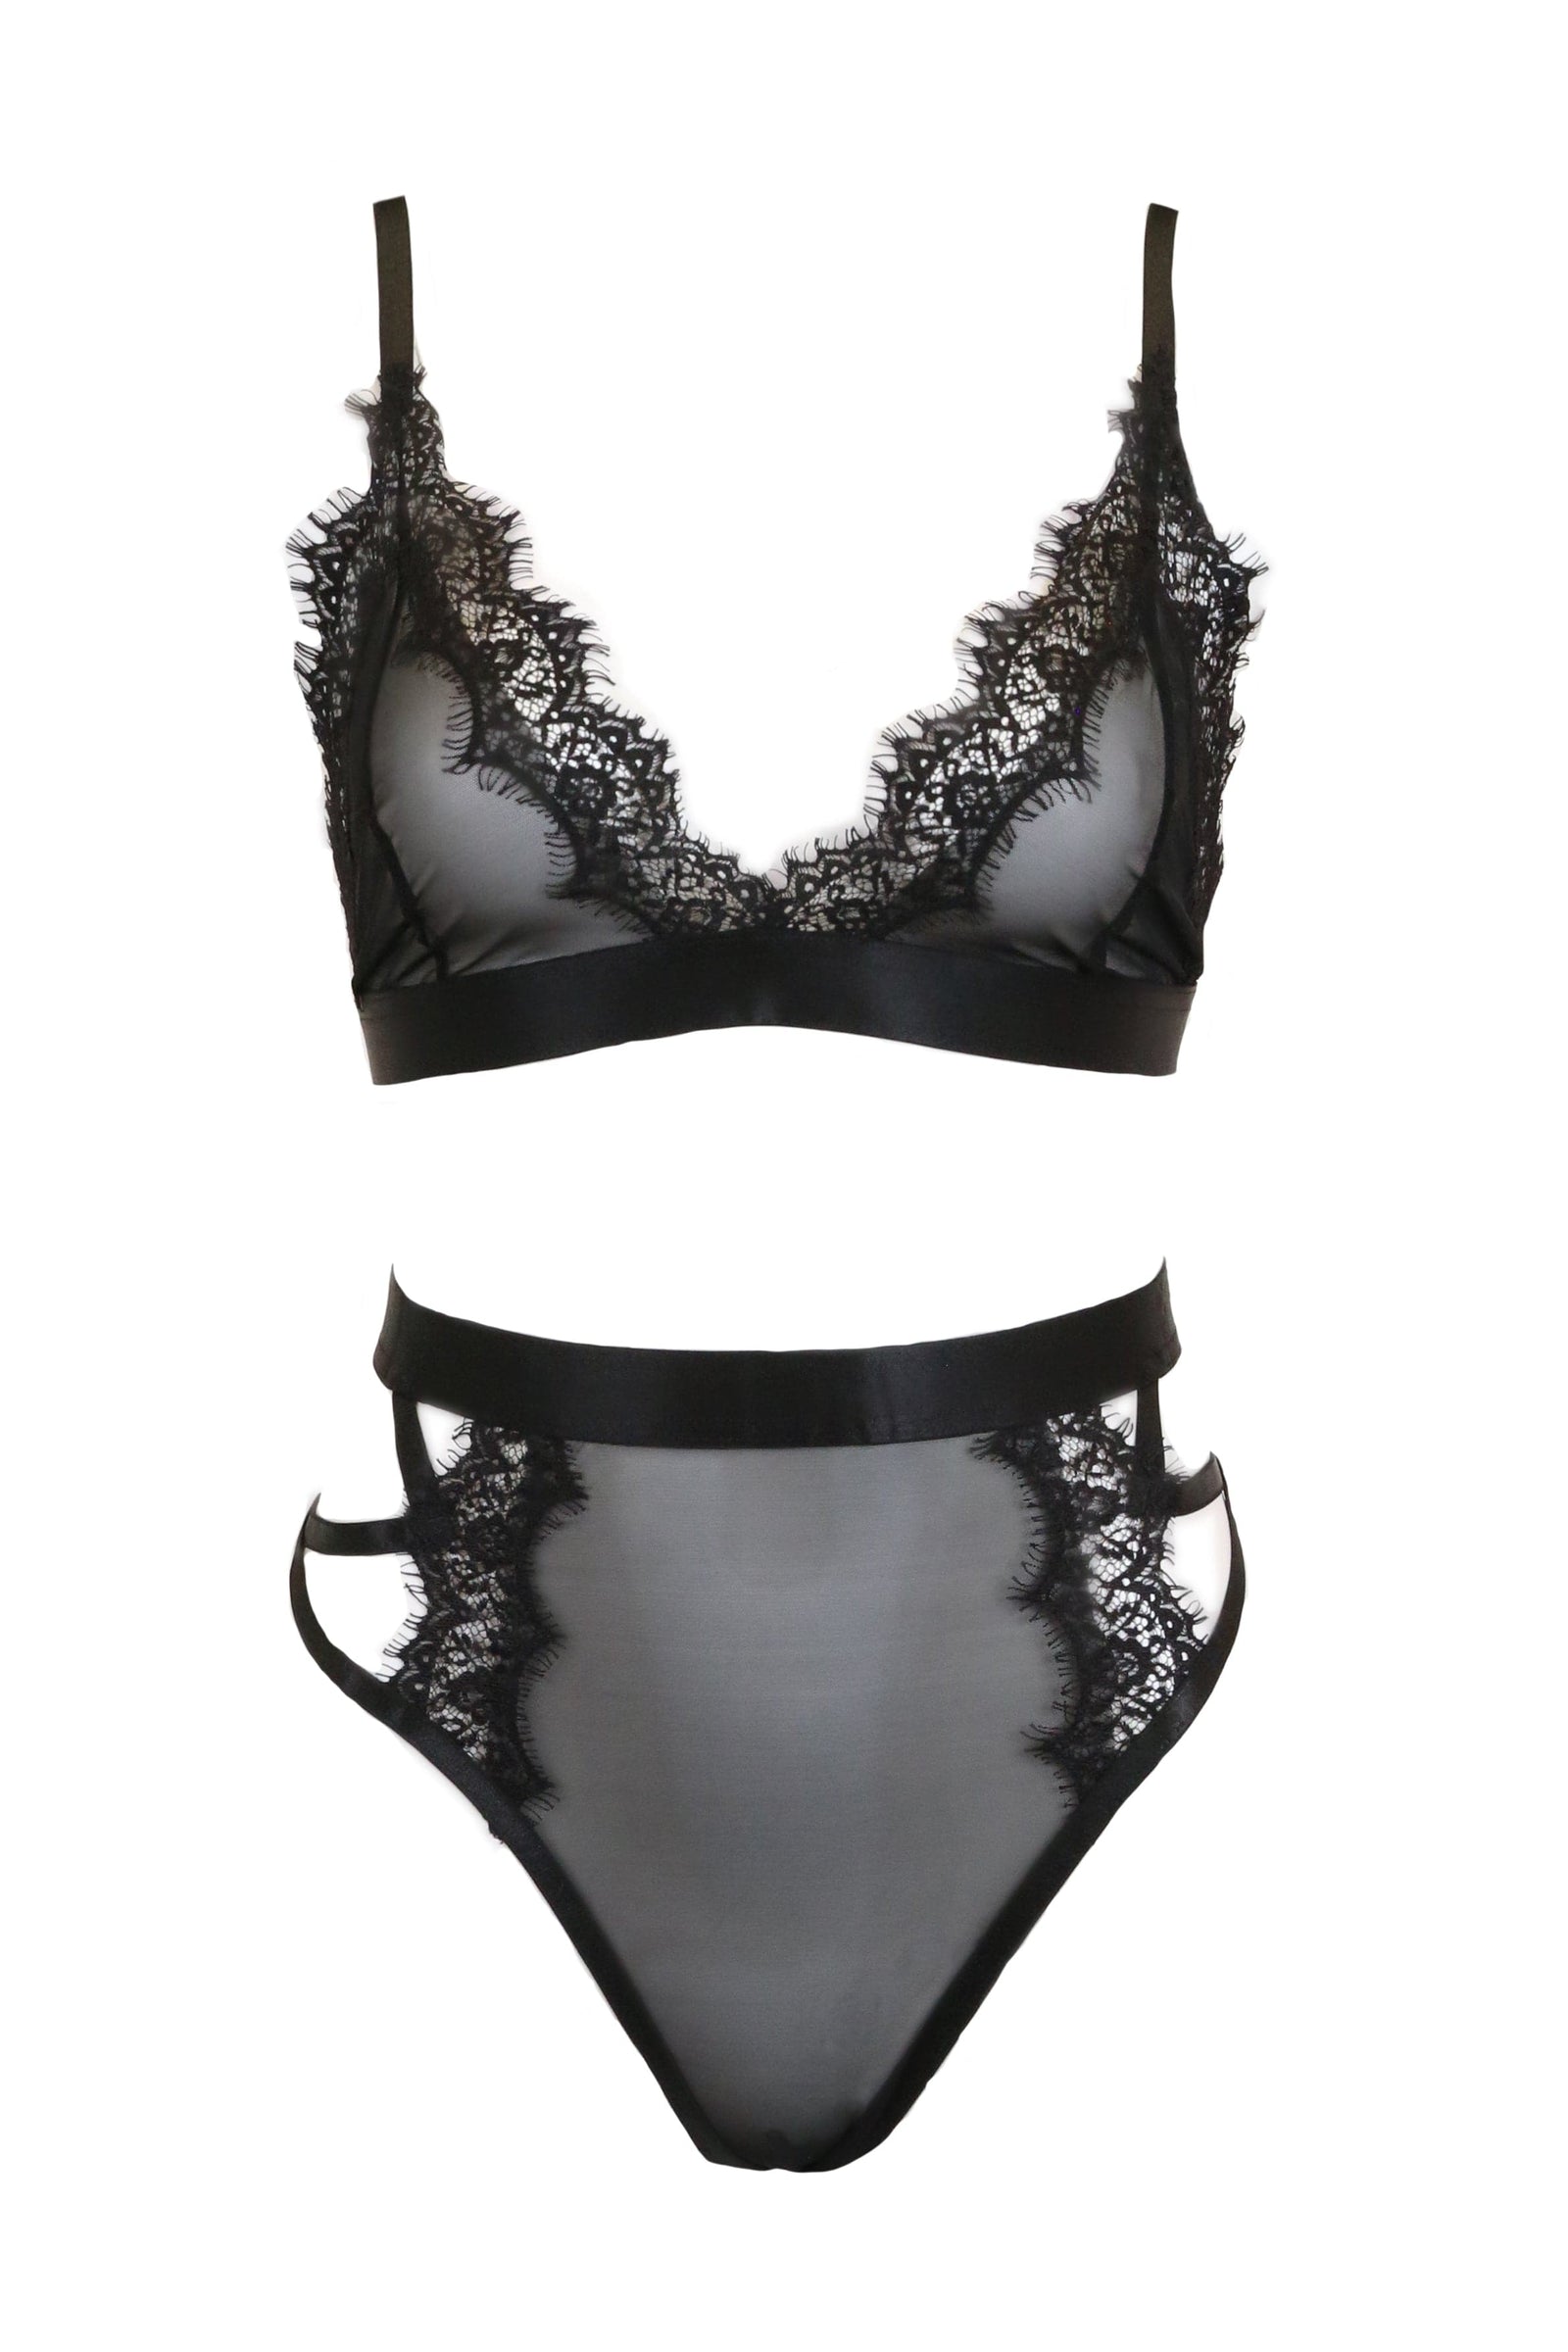 Buy ELIPSER Women's Cotton Padded Bra Panty Lingerie Set Honeymoon Bikini  Set for Girl's Black at